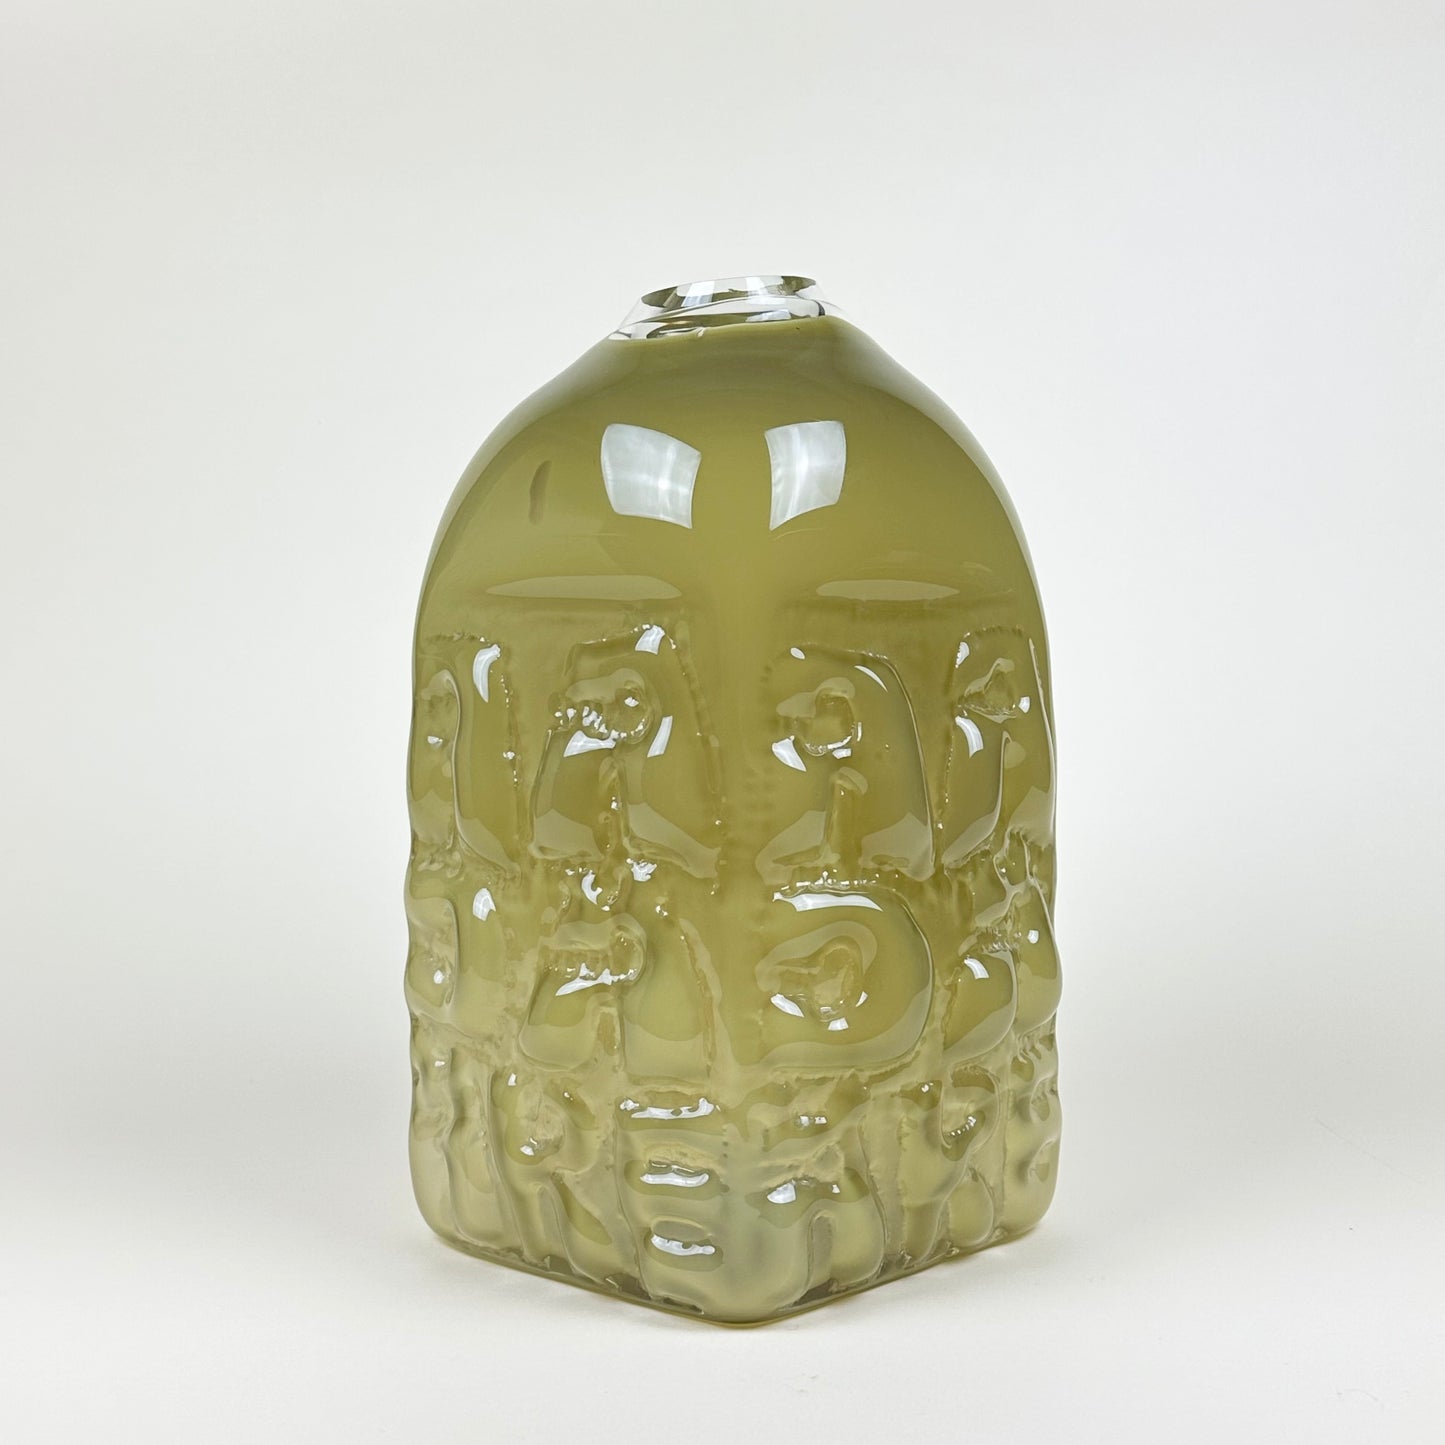 Olive vase "AADÄÄRE" by Studio Reiser